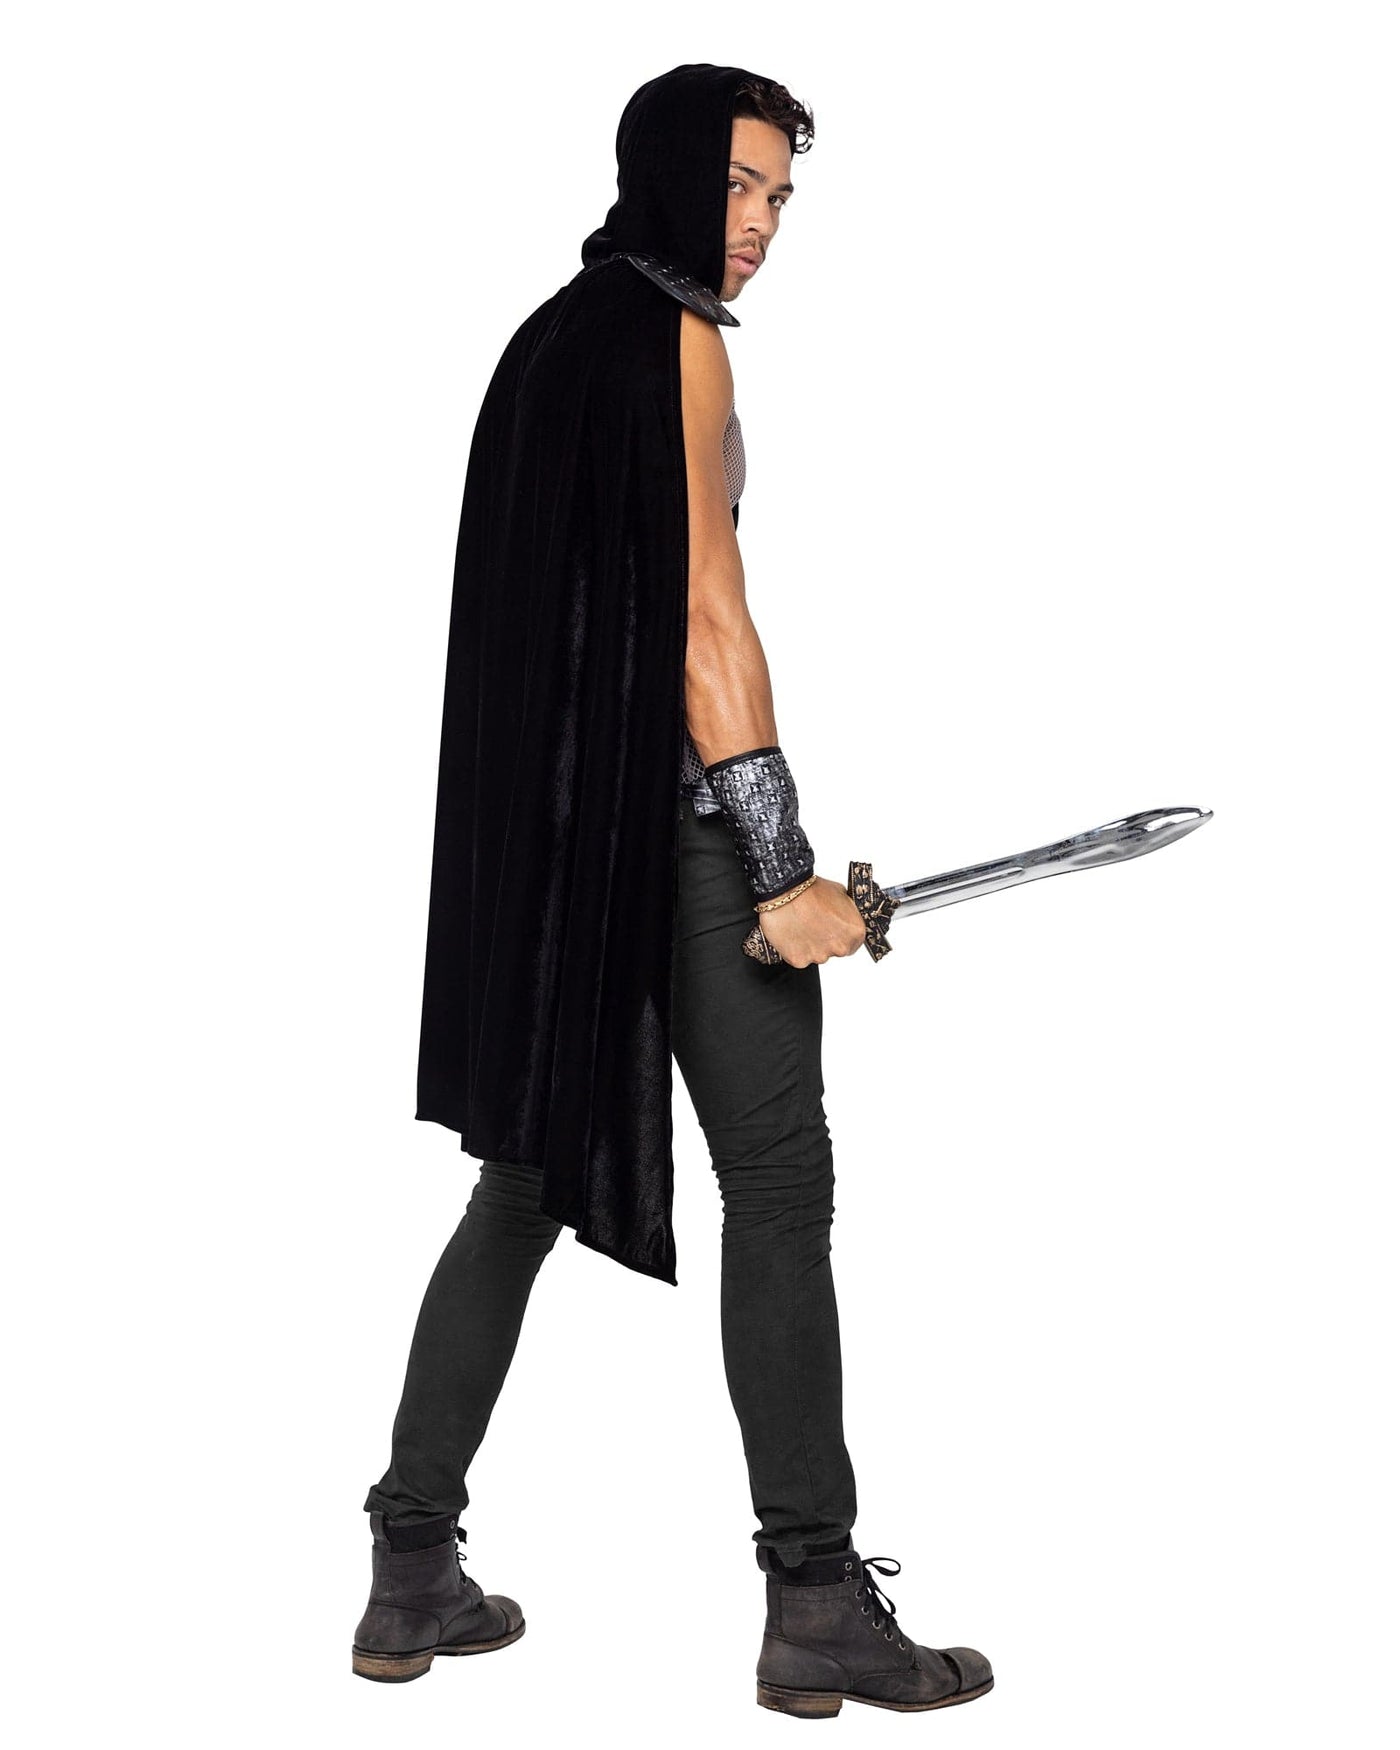 3pc. Dark Realm Warrior Men's Costume - For Love of Lingerie